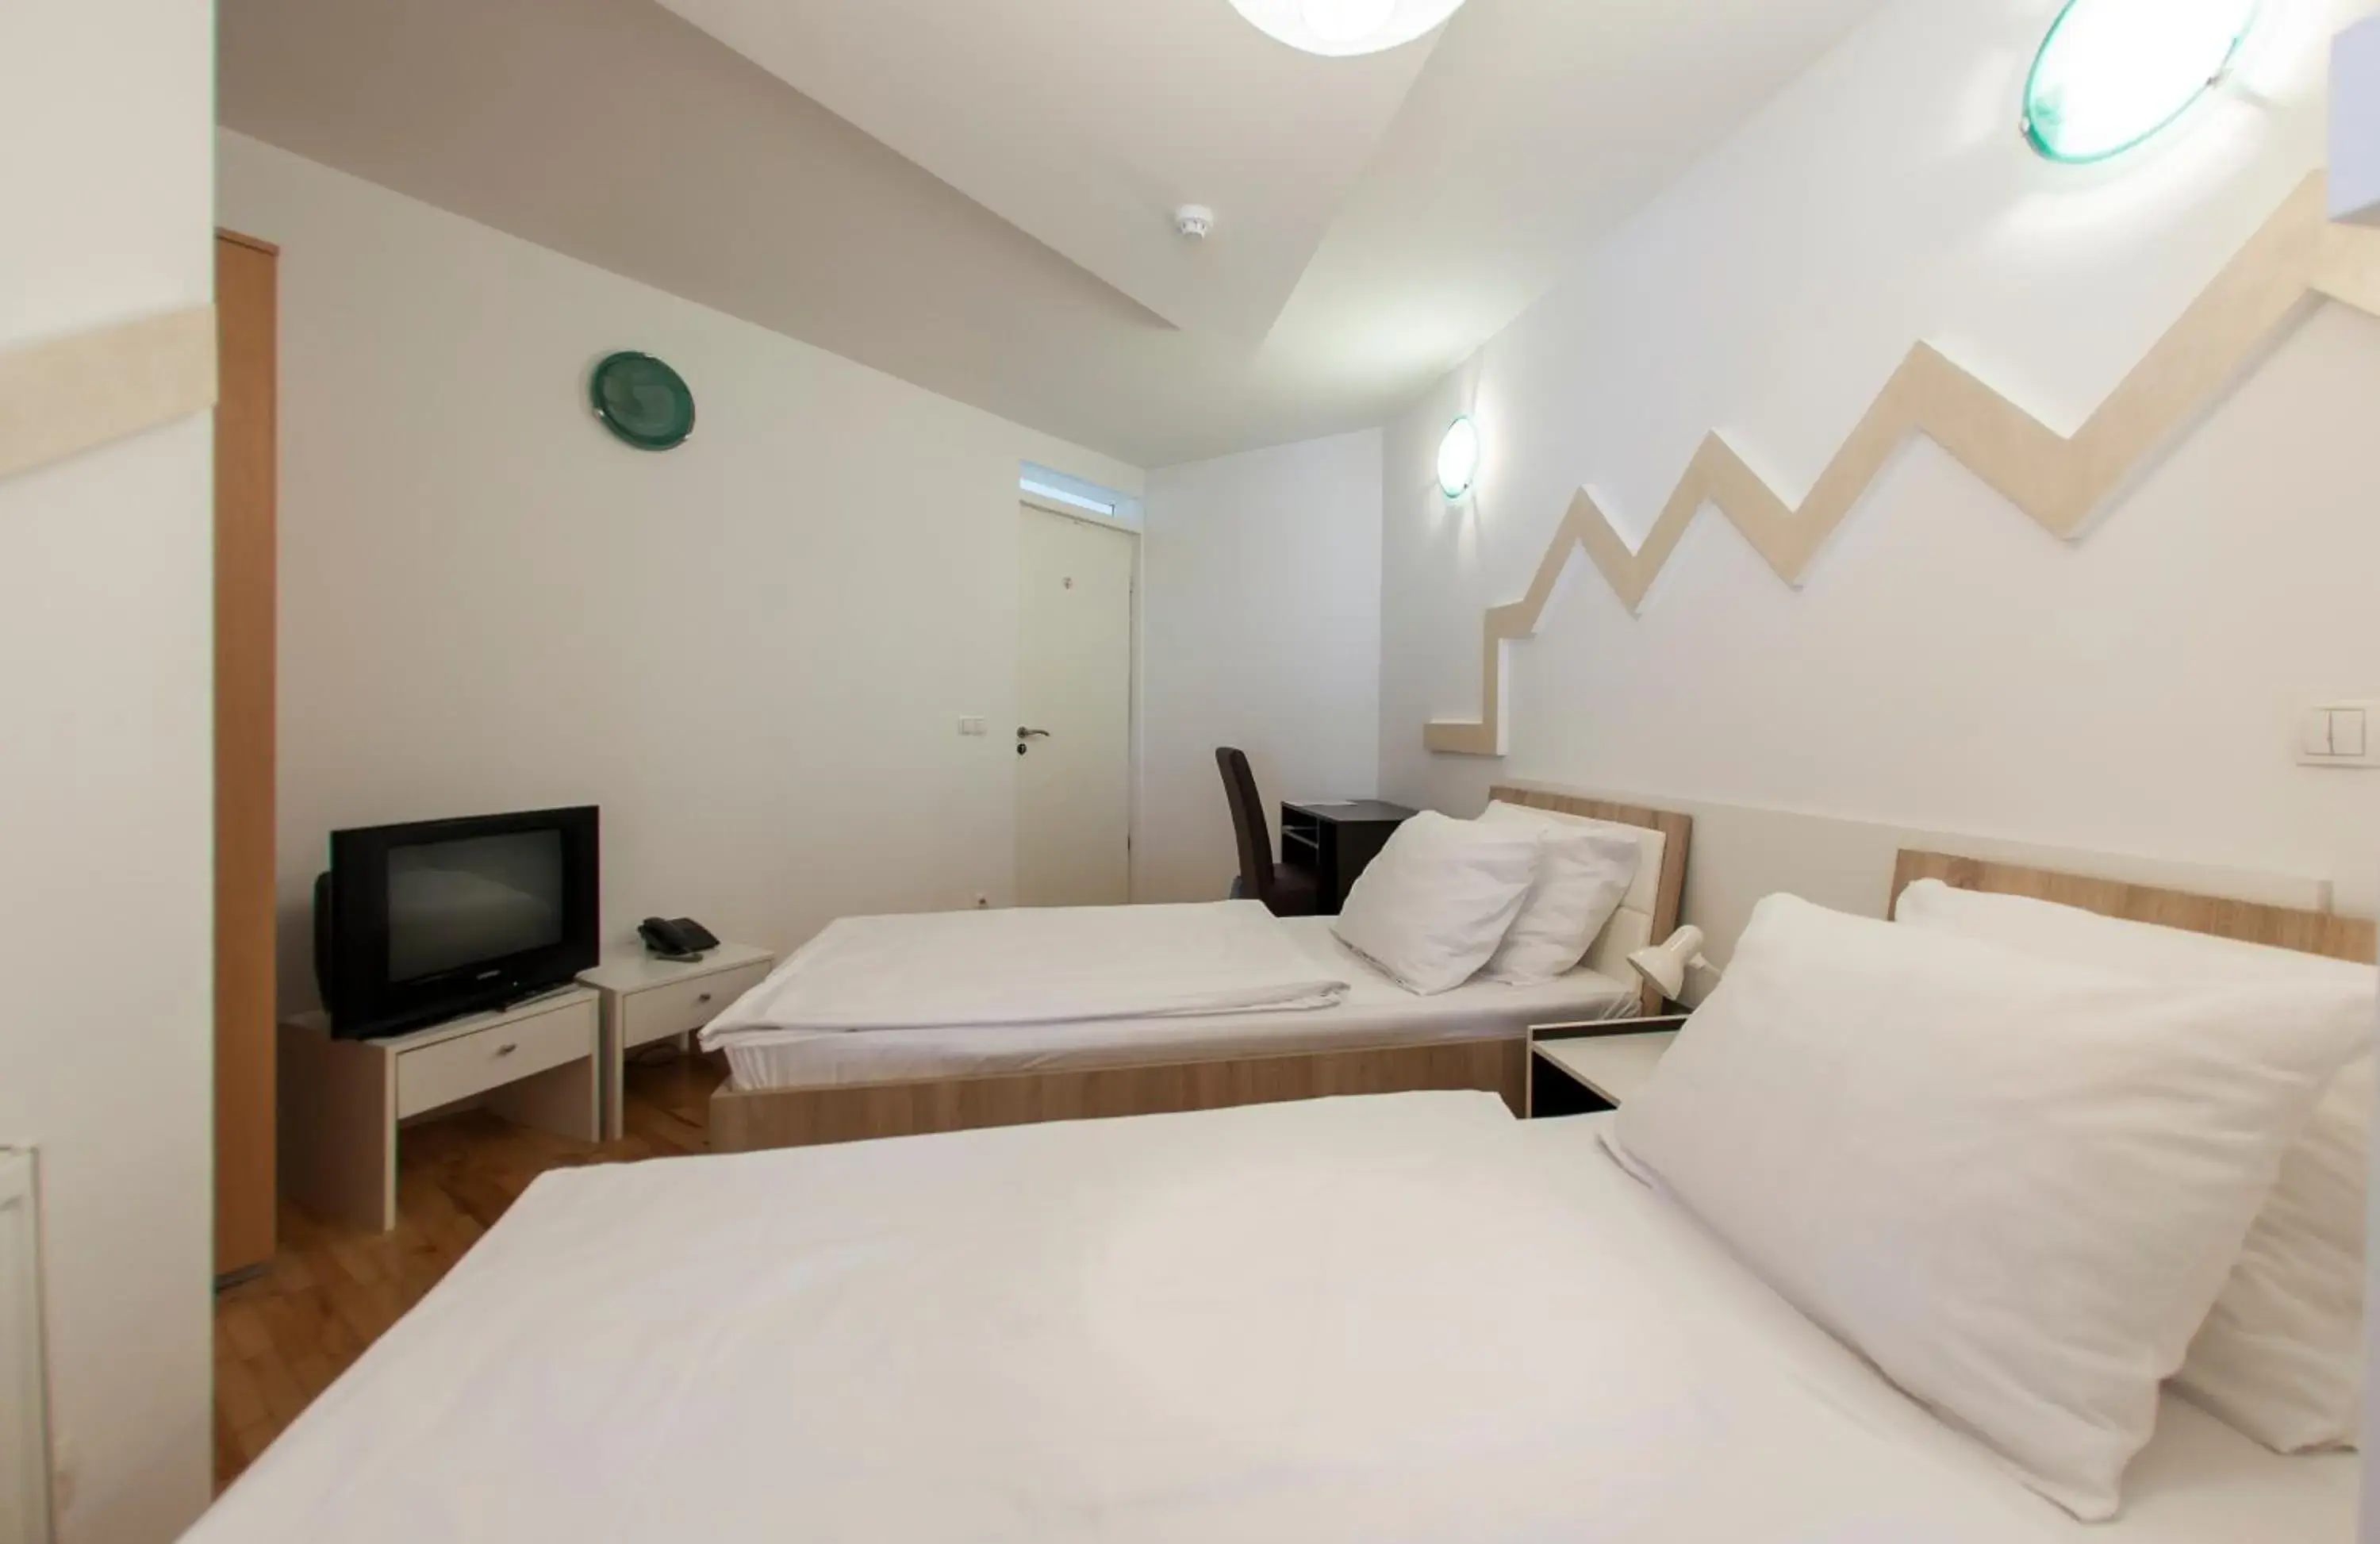 Bedroom, Room Photo in Hotel Hayat